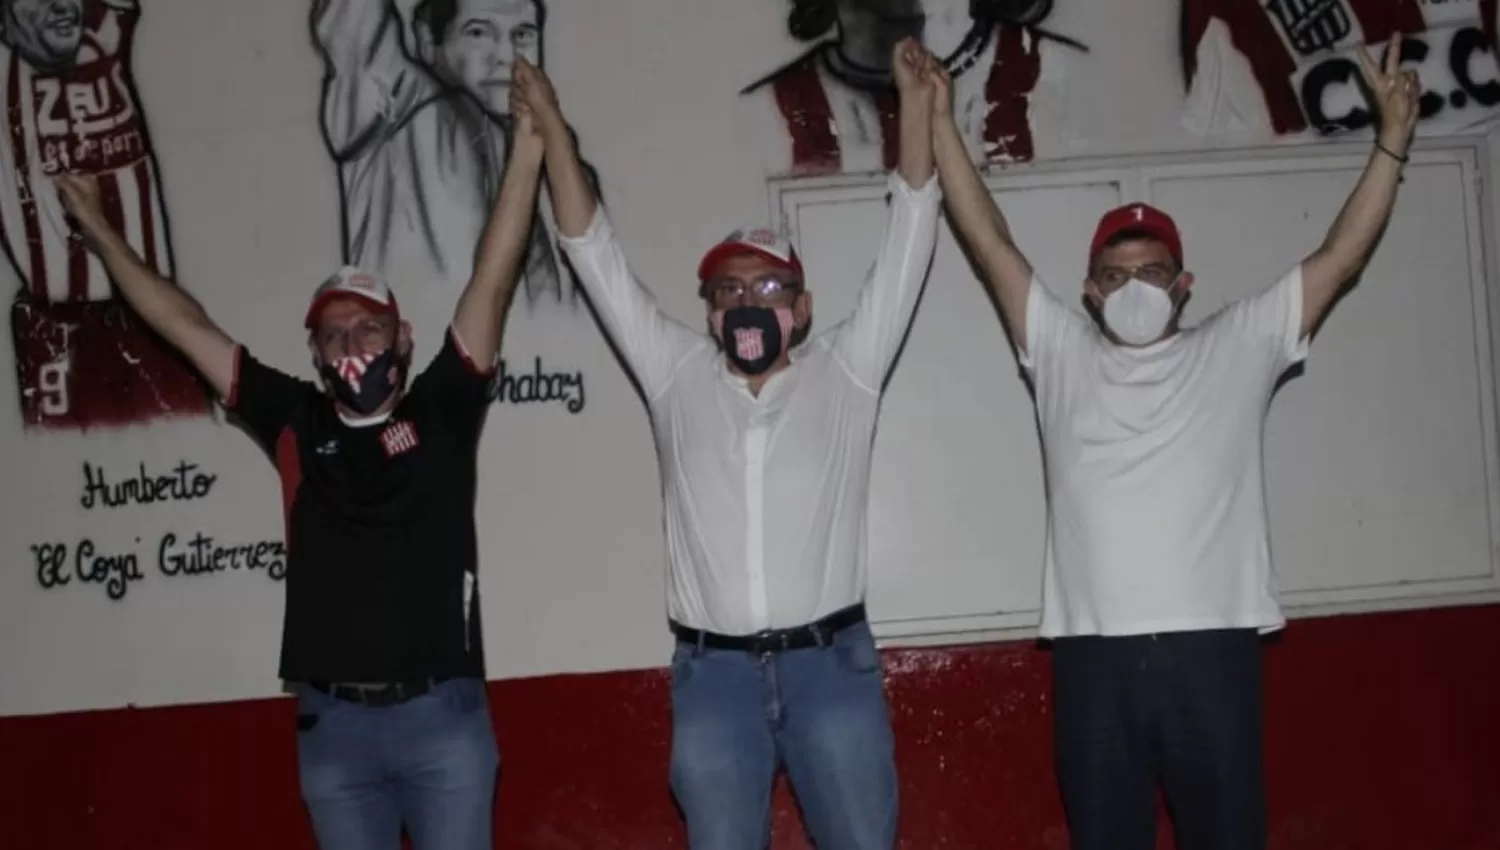 LA VICTORIA. Sogno, Moisello y Cisneros levantan las manos en La Ciudadela para celebrar el triunfo en las urnas.